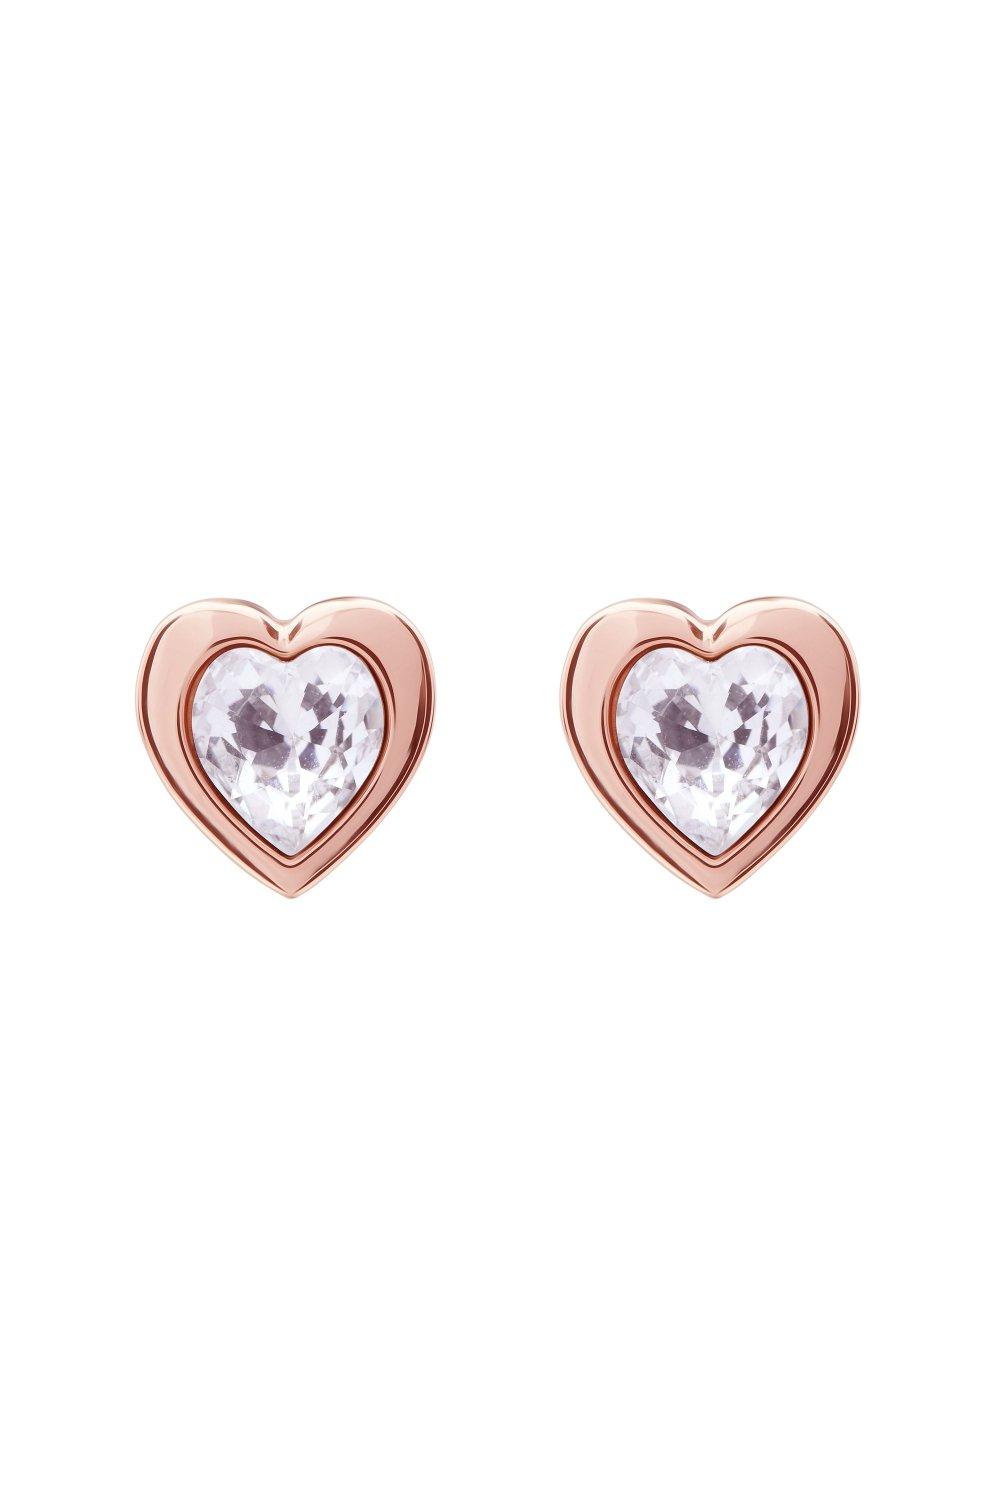 han swarovski crystal heart earrings earrings - tbj1654-24-02